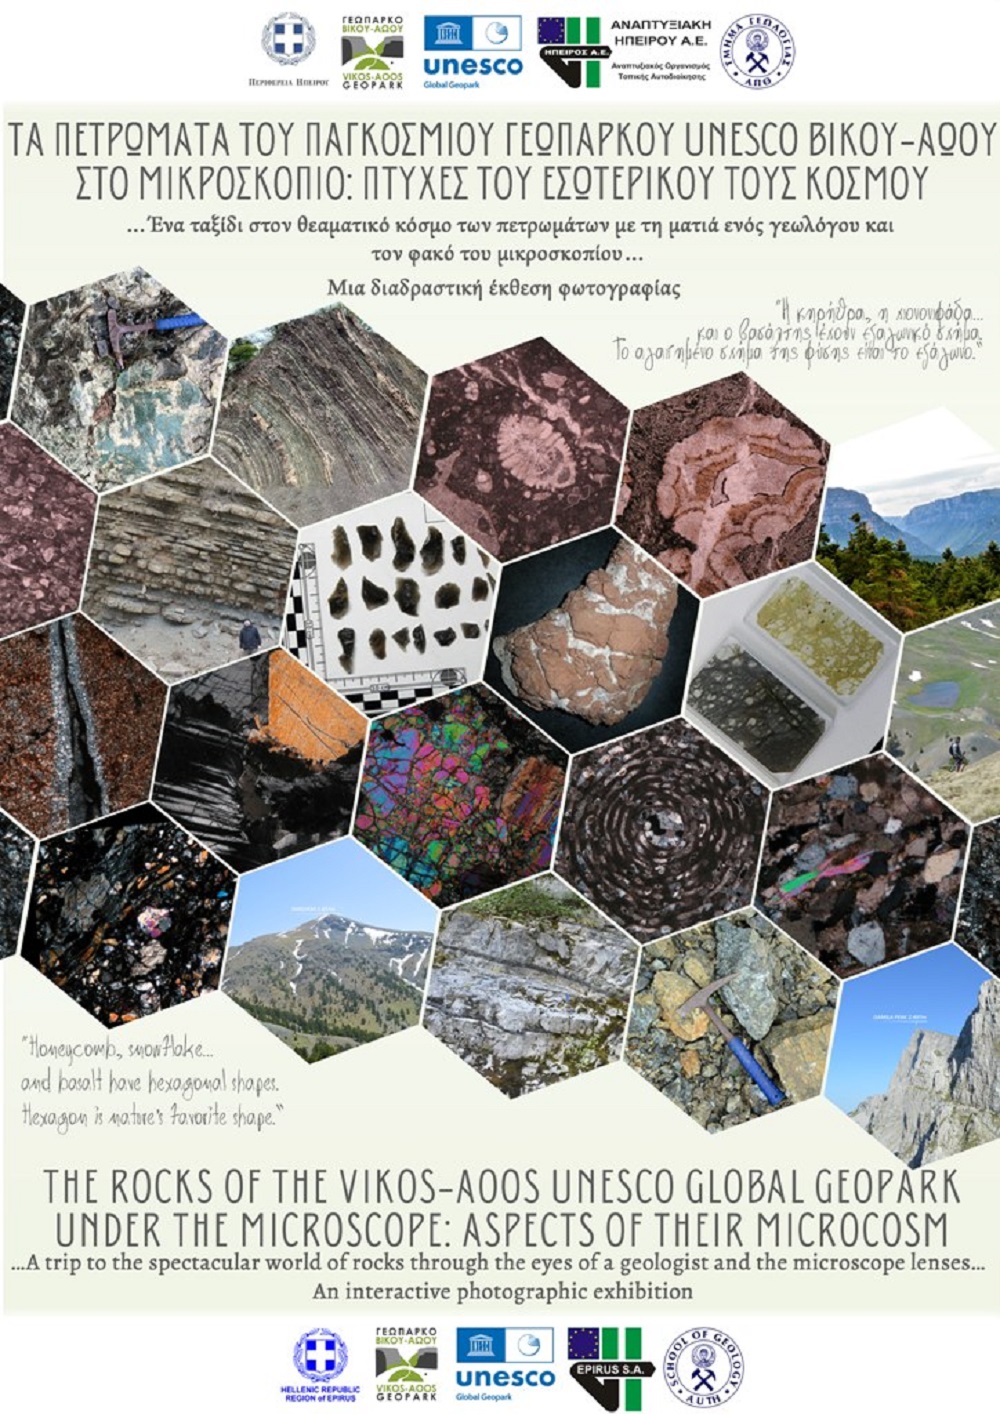 Φωτογραφική Έκθεση: “Τα Πετρώματα του Παγκοσμίου Γεωπάρκου UNESCO Βίκου-Αώου στο Μικροσκόπιο”